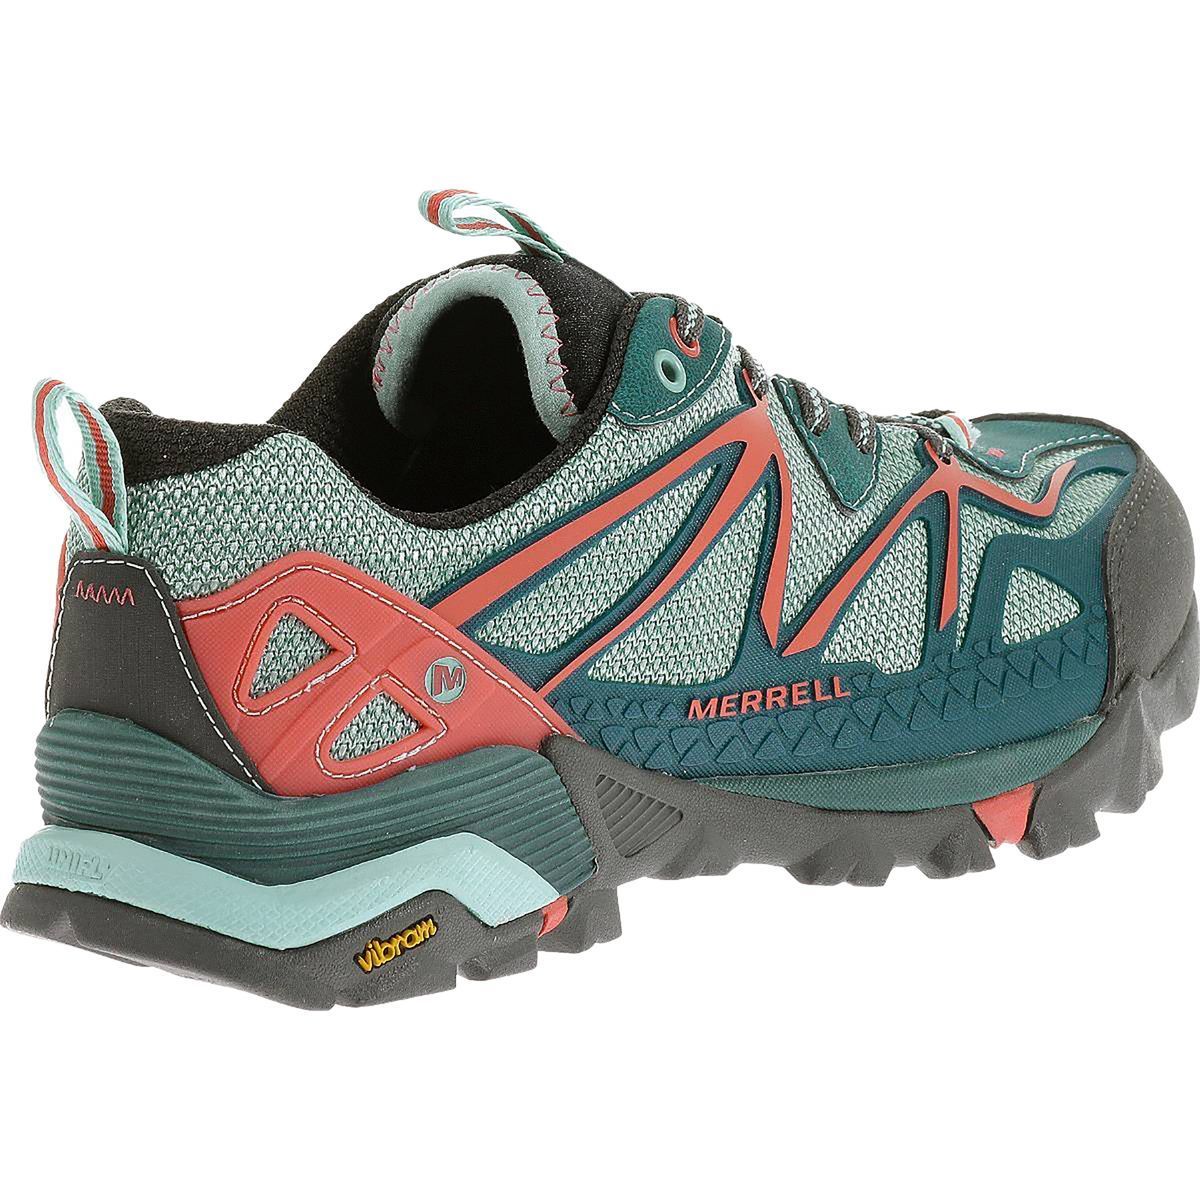 Merrell Capra Sport Hiking Shoe - Women's - Footwear